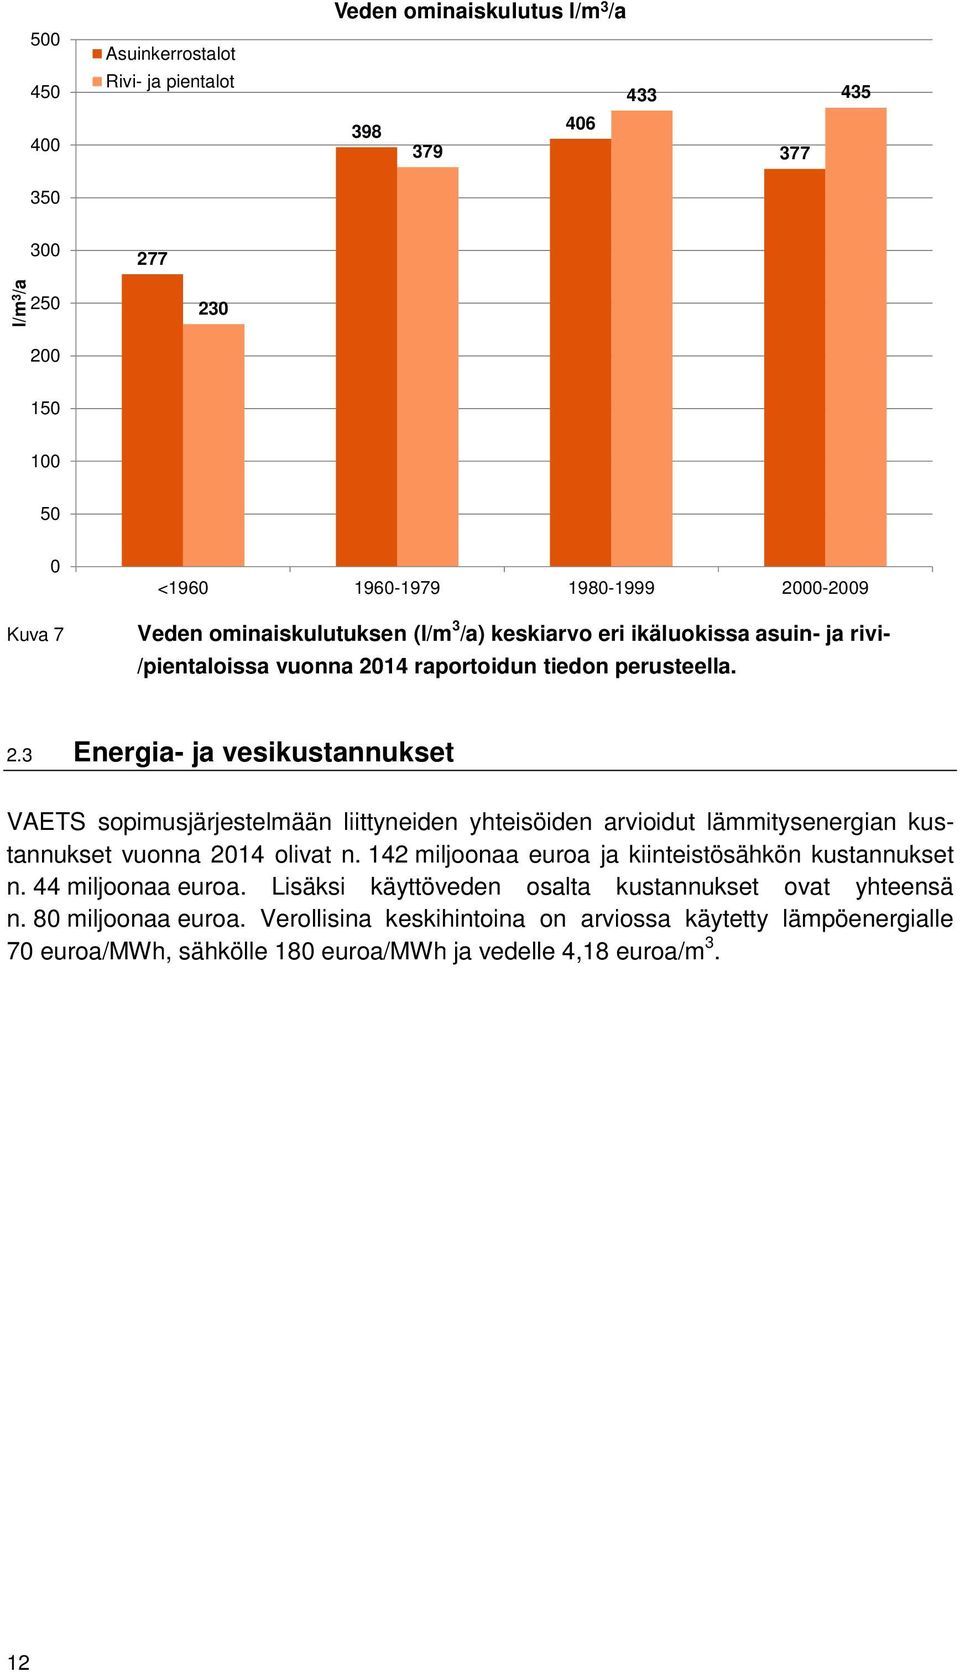 14 raportoidun tiedon perusteella. 2.3 Energia- ja vesikustannukset VAETS sopimusjärjestelmään liittyneiden yhteisöiden arvioidut lämmitysenergian kustannukset vuonna 2014 olivat n.